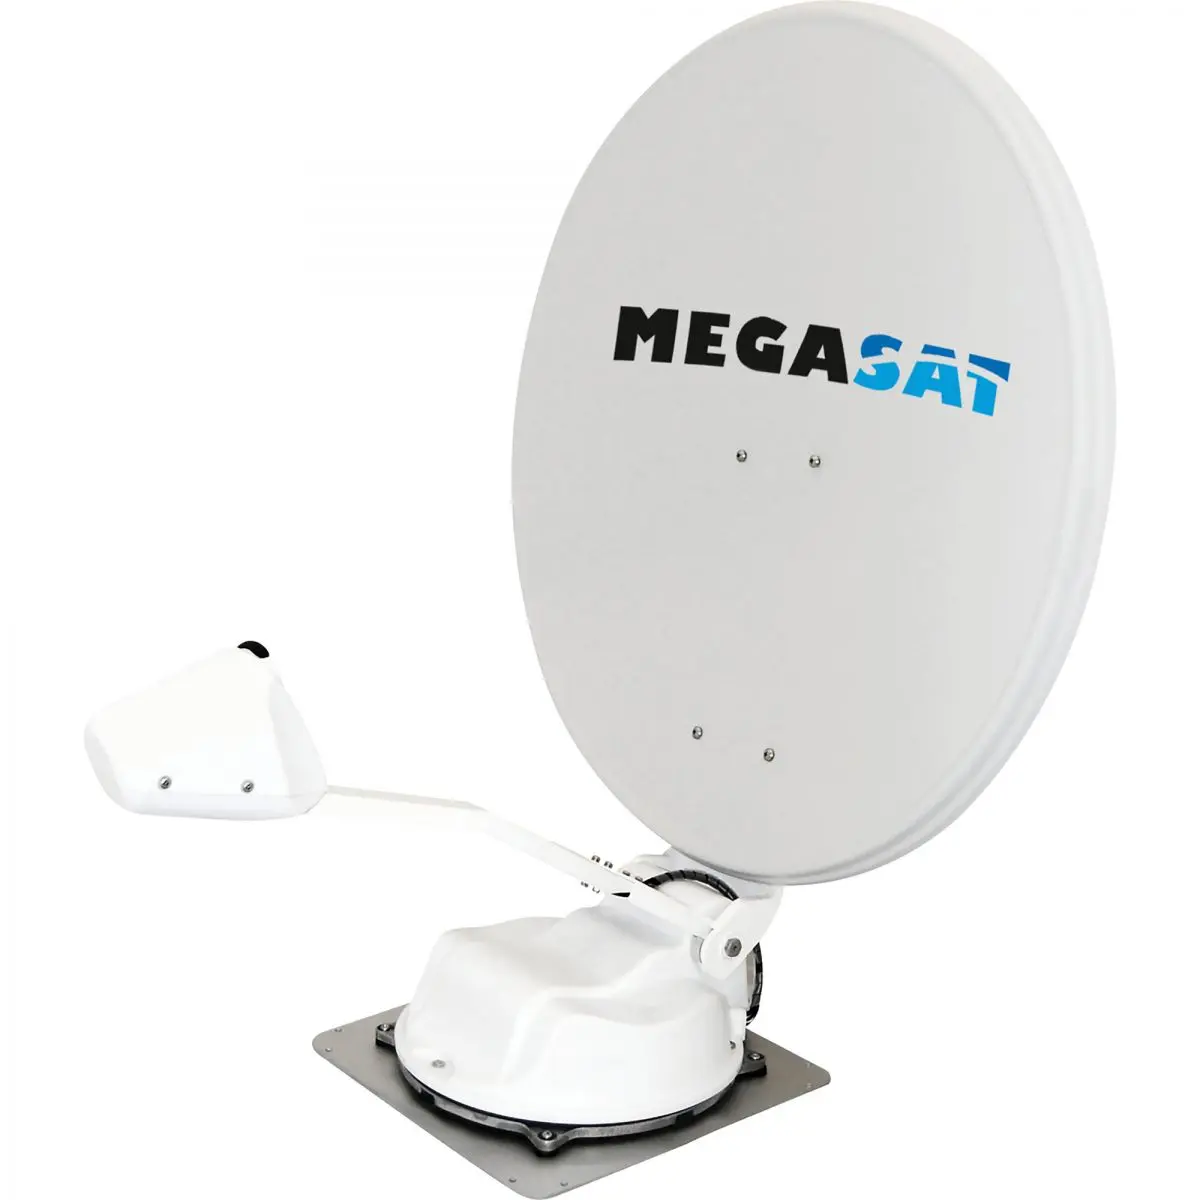 Megasat Caravanman 65 Premium műholdrendszer - - már nem elérhető -